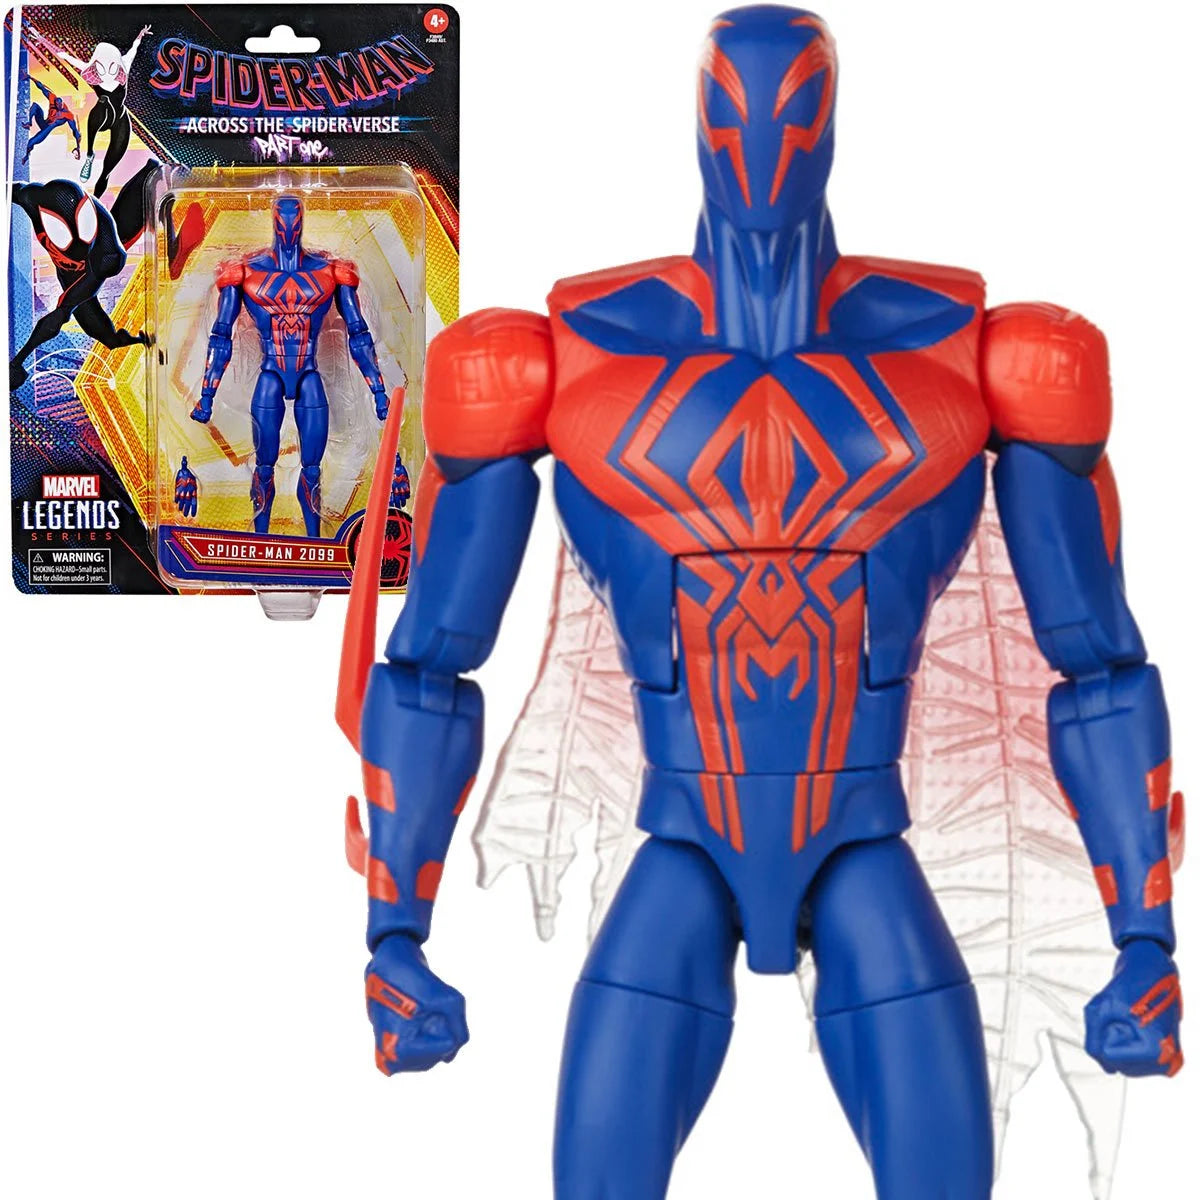 Funko Pop! Marvel: Spider-Man: Across The Spider-Verse - Spider-Man 2099